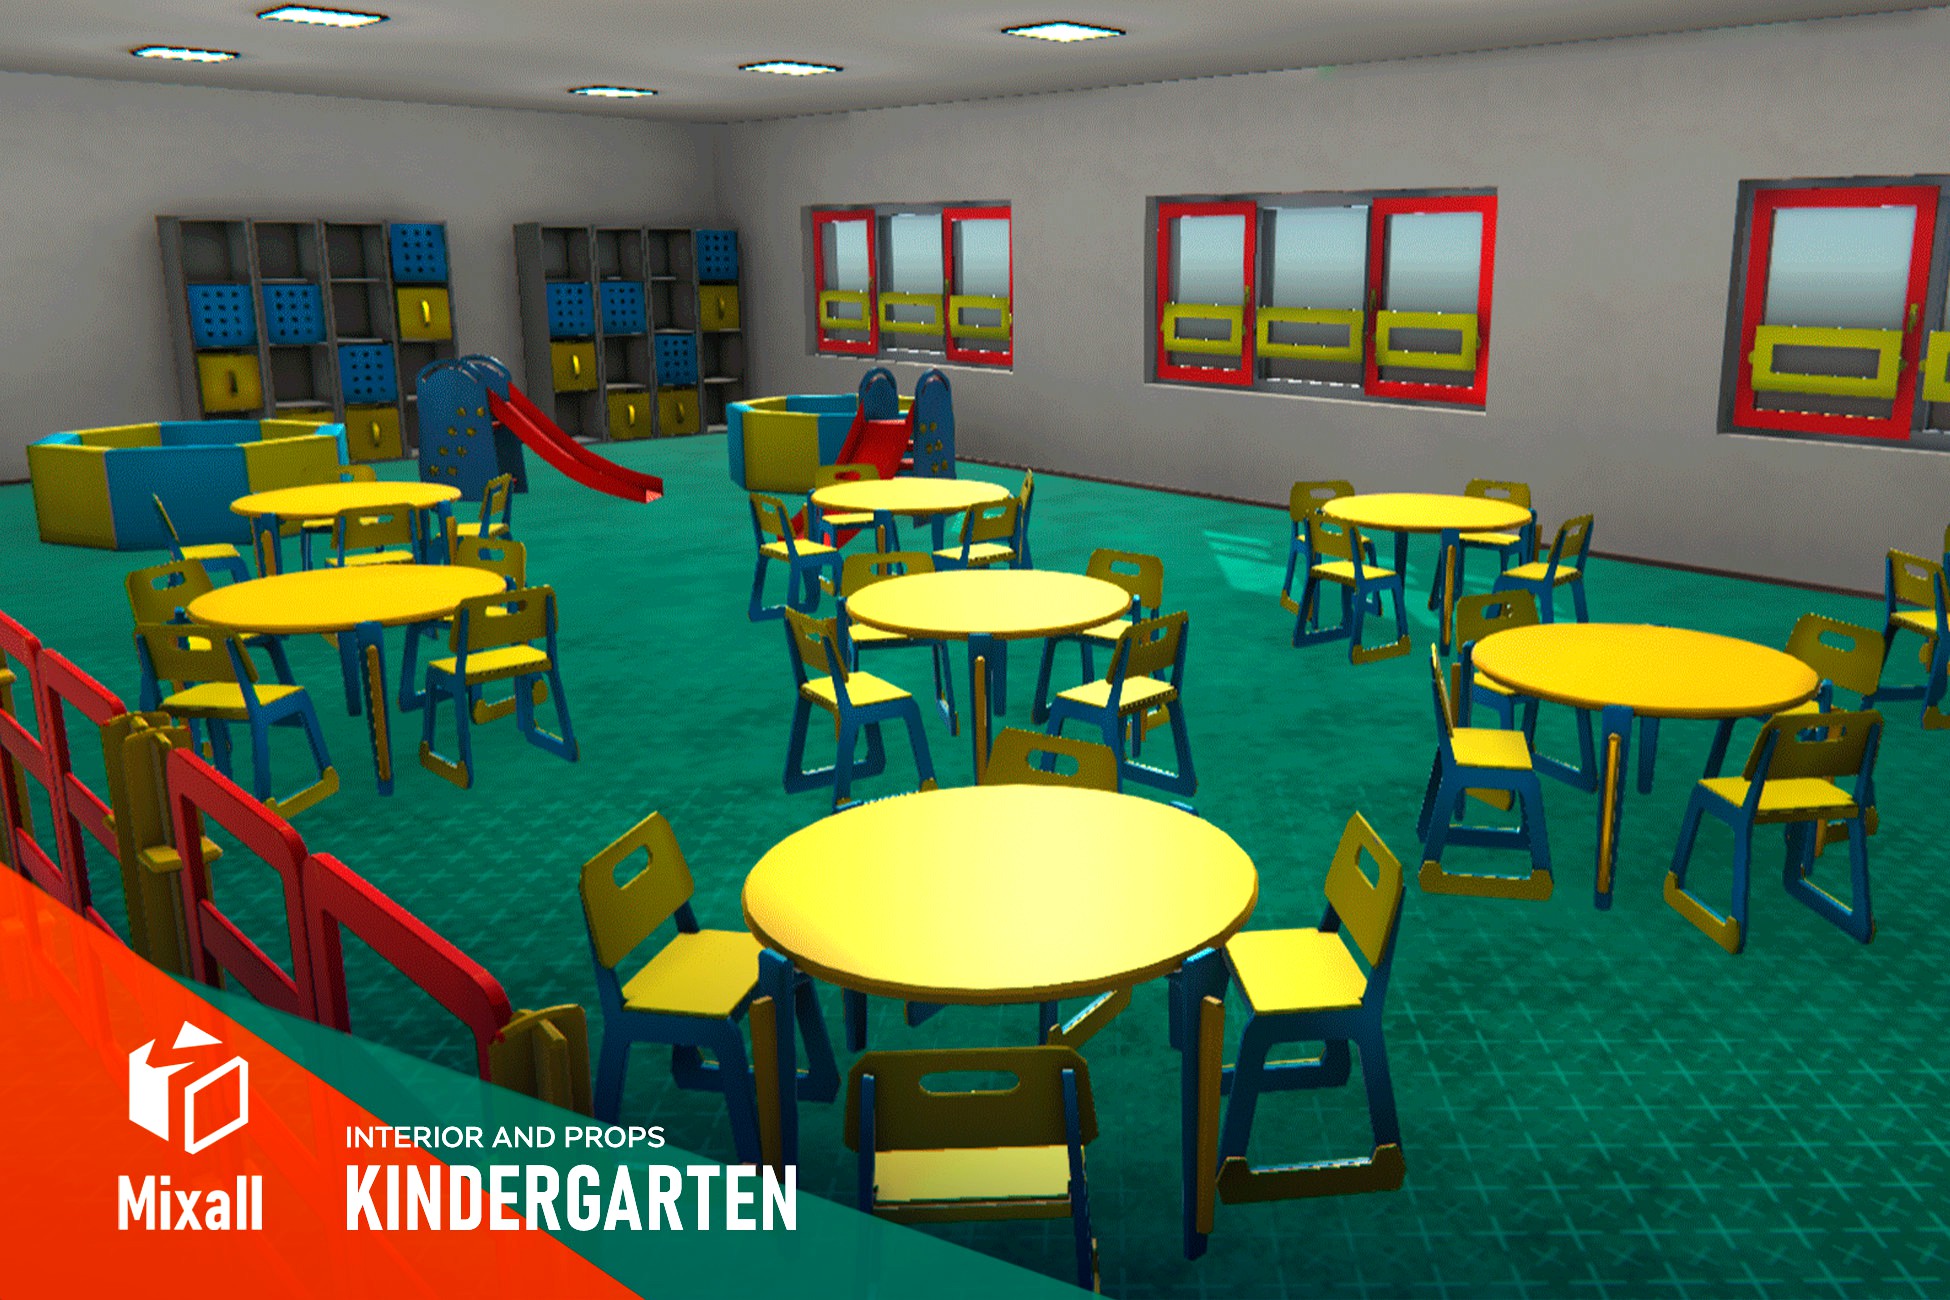 Kindergarten - interior and props